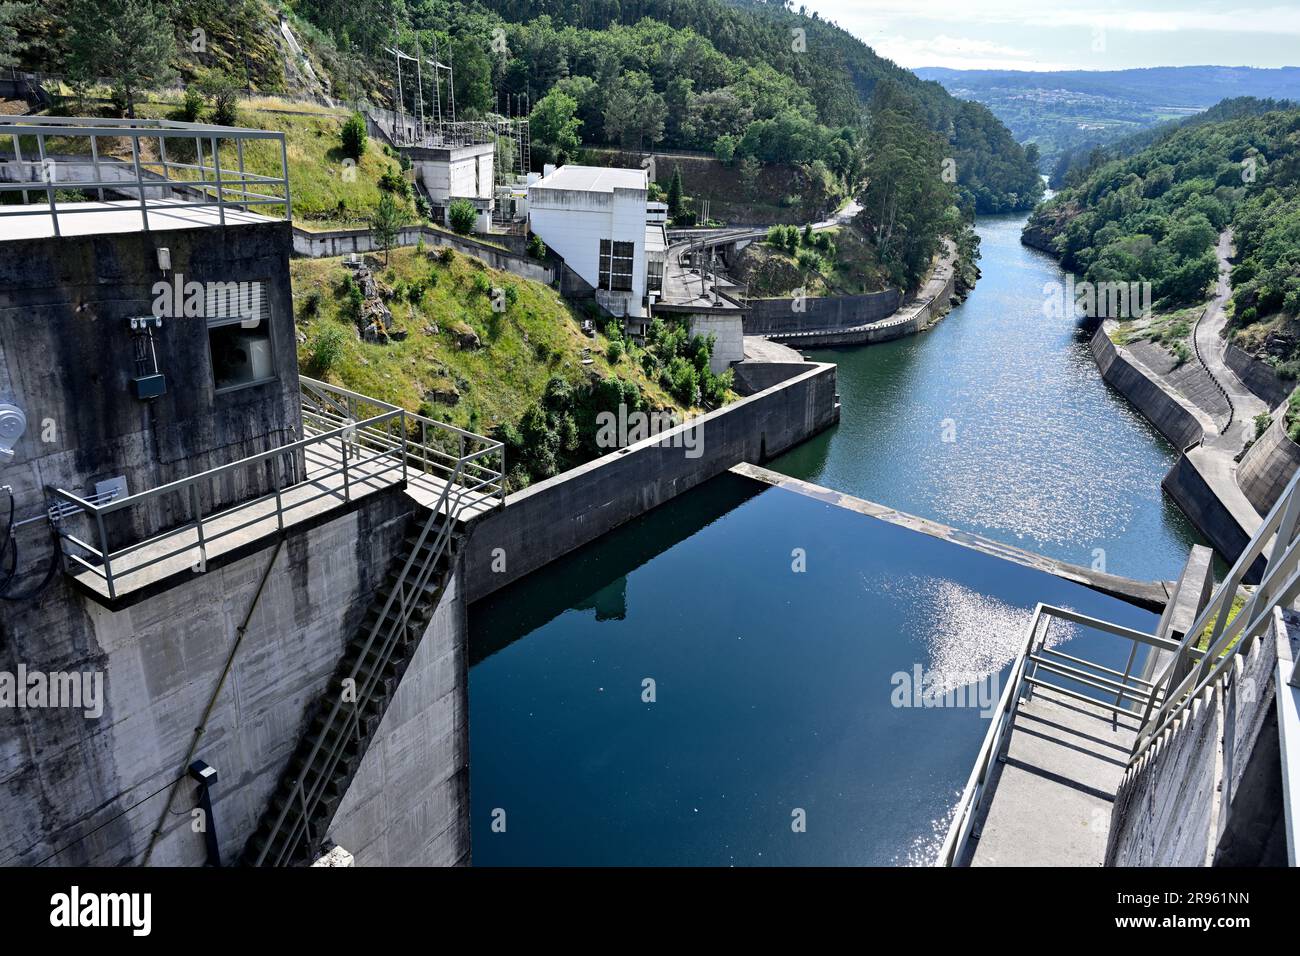 Le petit barrage hydroélectrique de Barragem do Torrão sur la rivière Tamega, vue sur la vallée, Portugal Banque D'Images